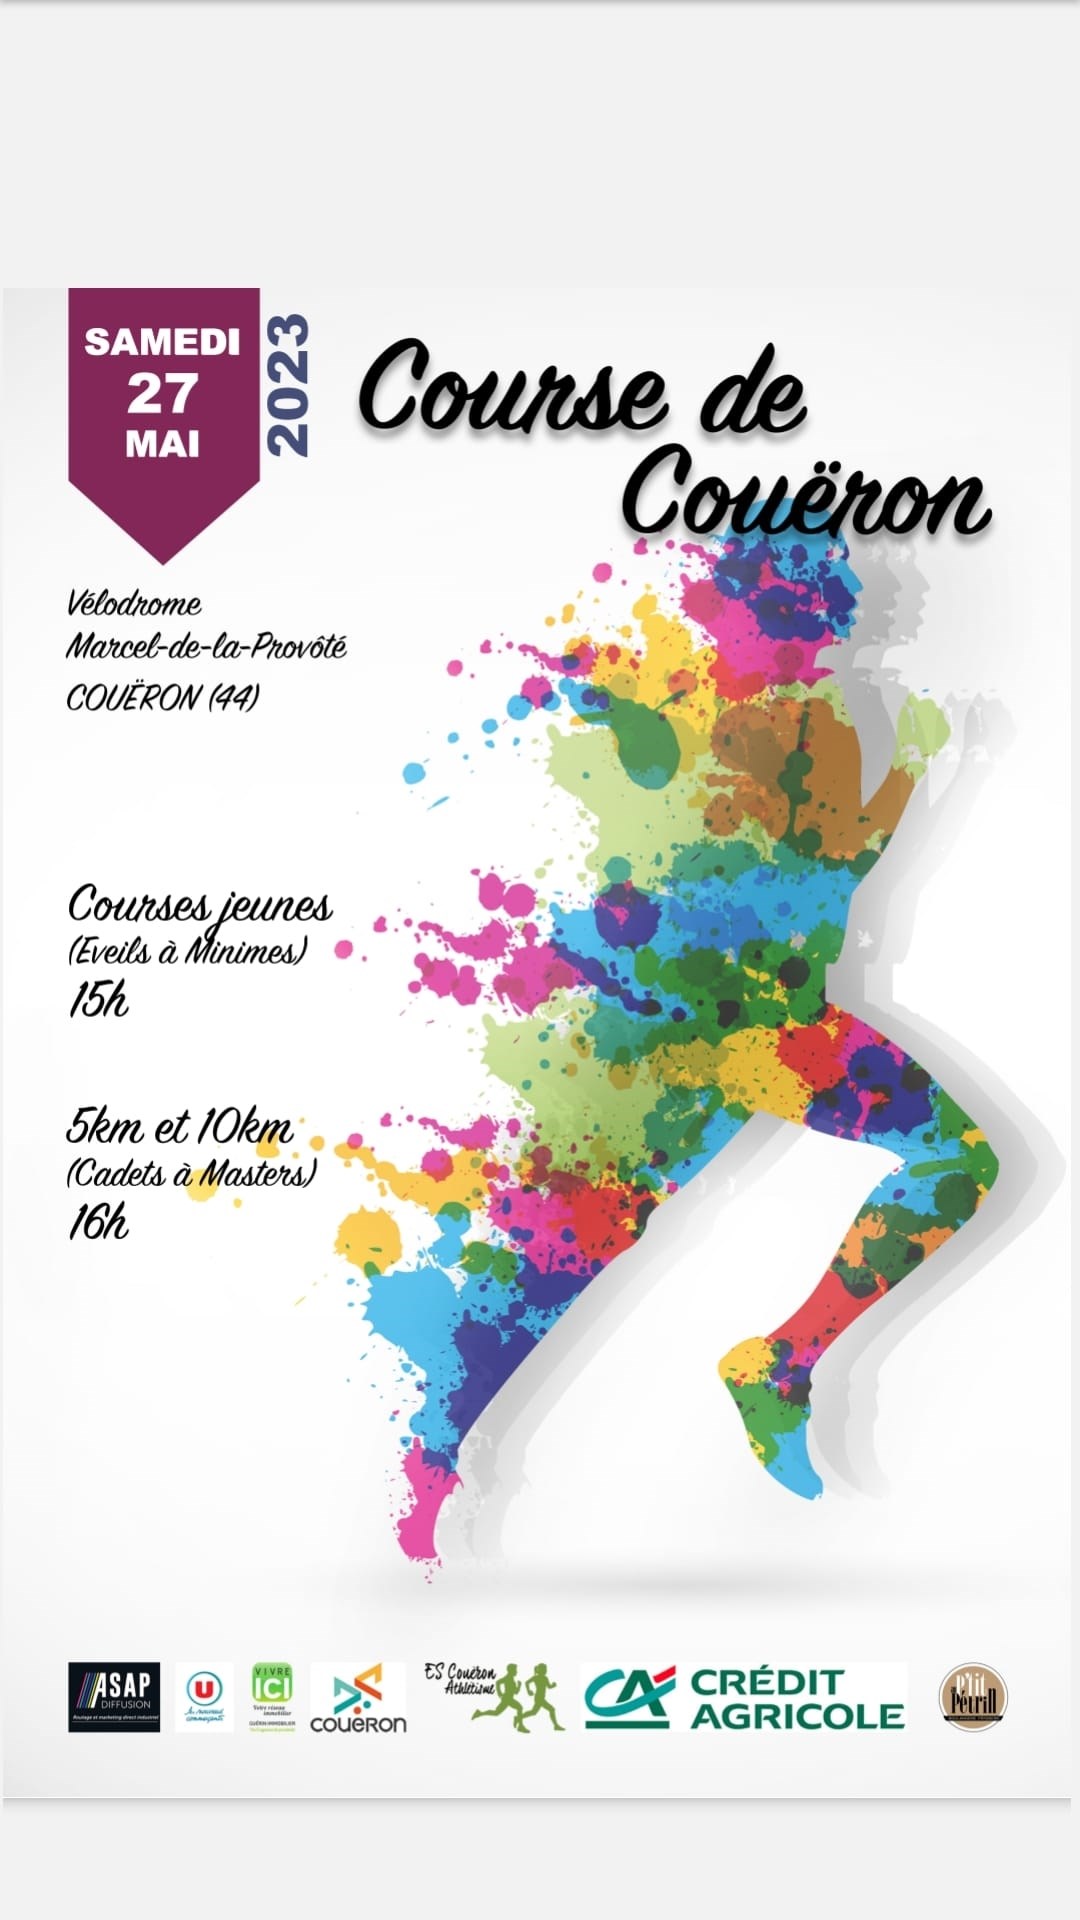 Course de Couëron sur les bords de Loire samedi 27 mai 2023 © ESC Athlétisme